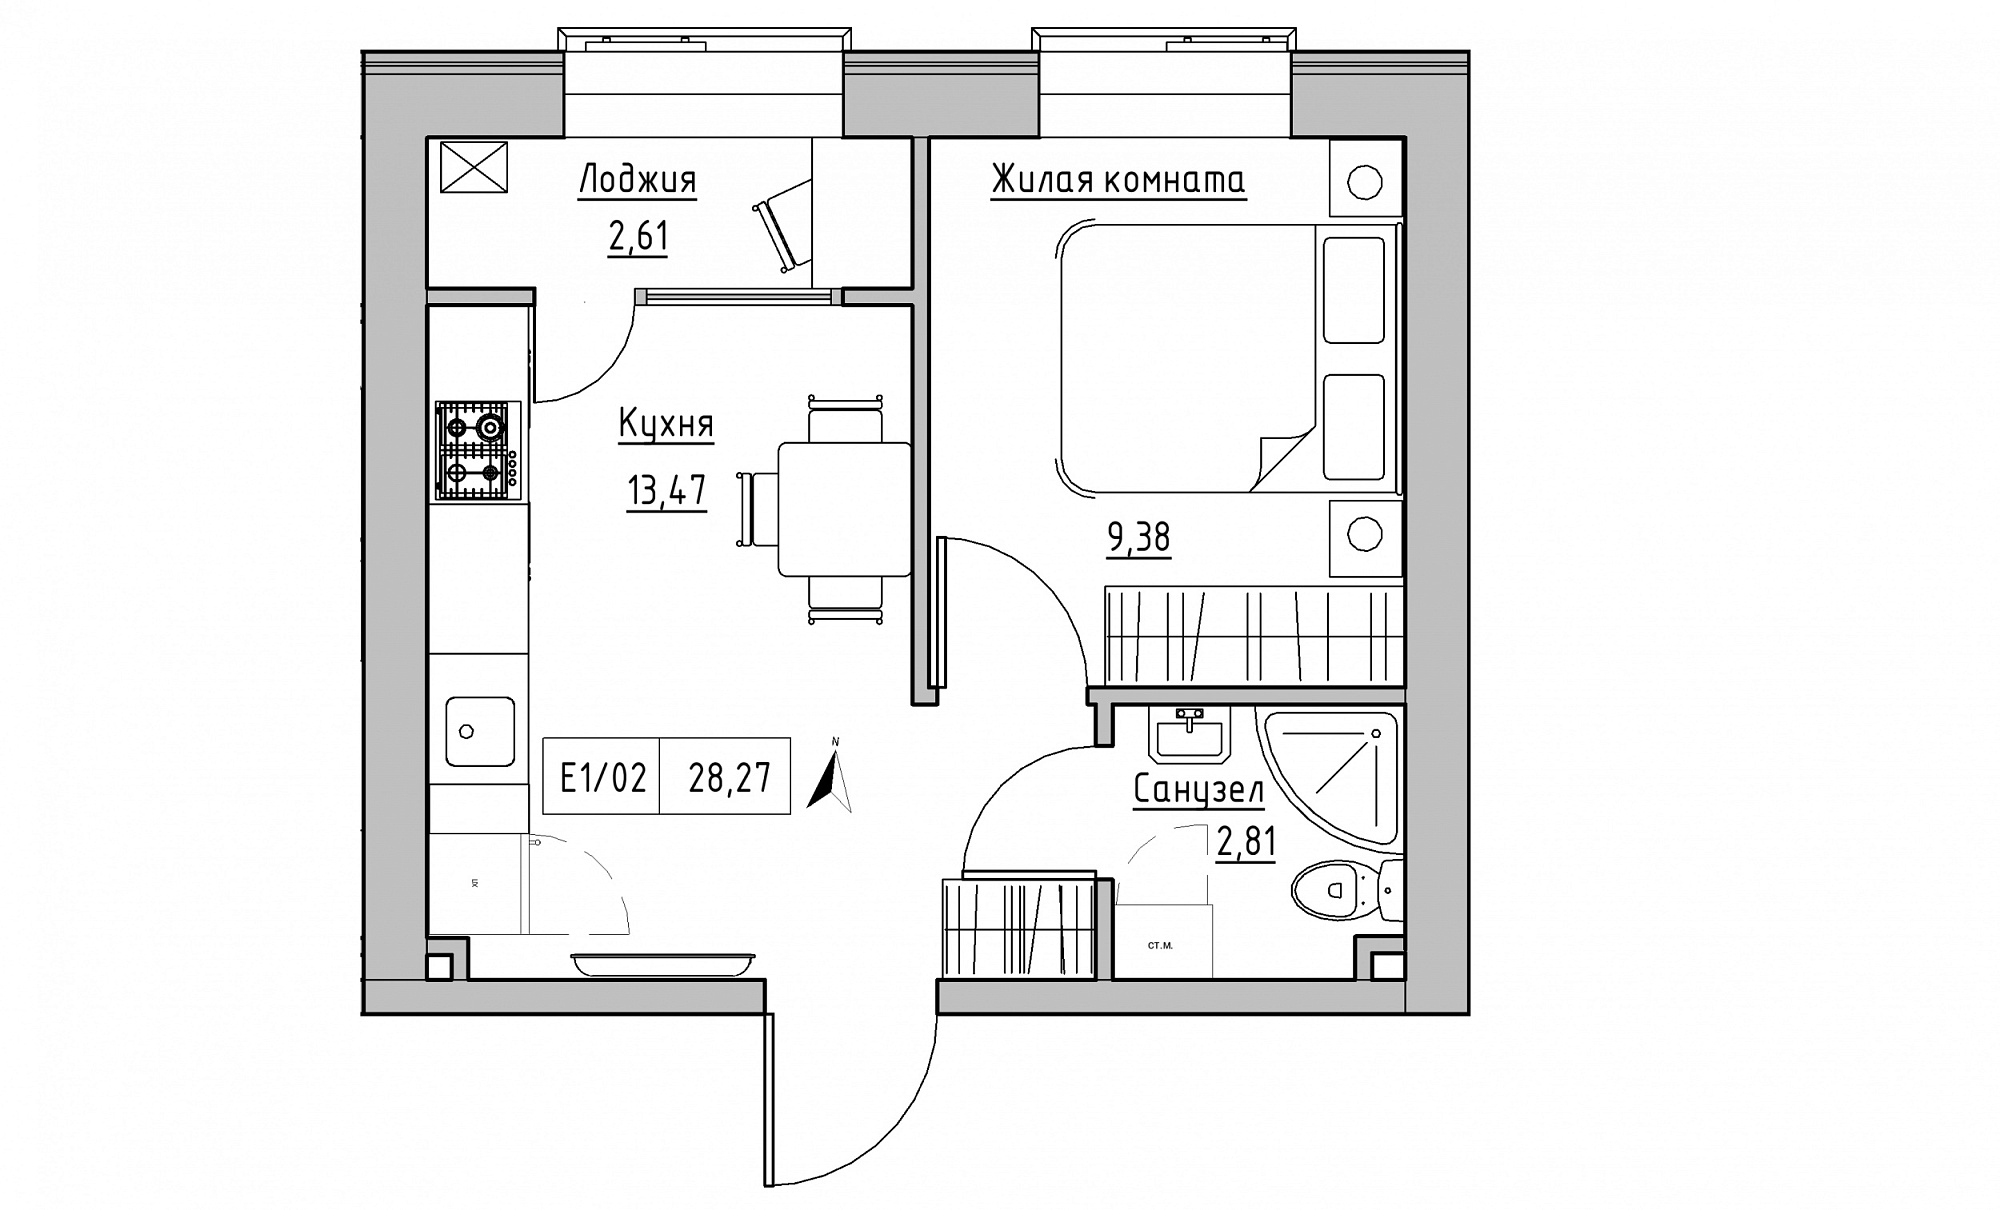 Планування 1-к квартира площею 28.27м2, KS-015-05/0018.